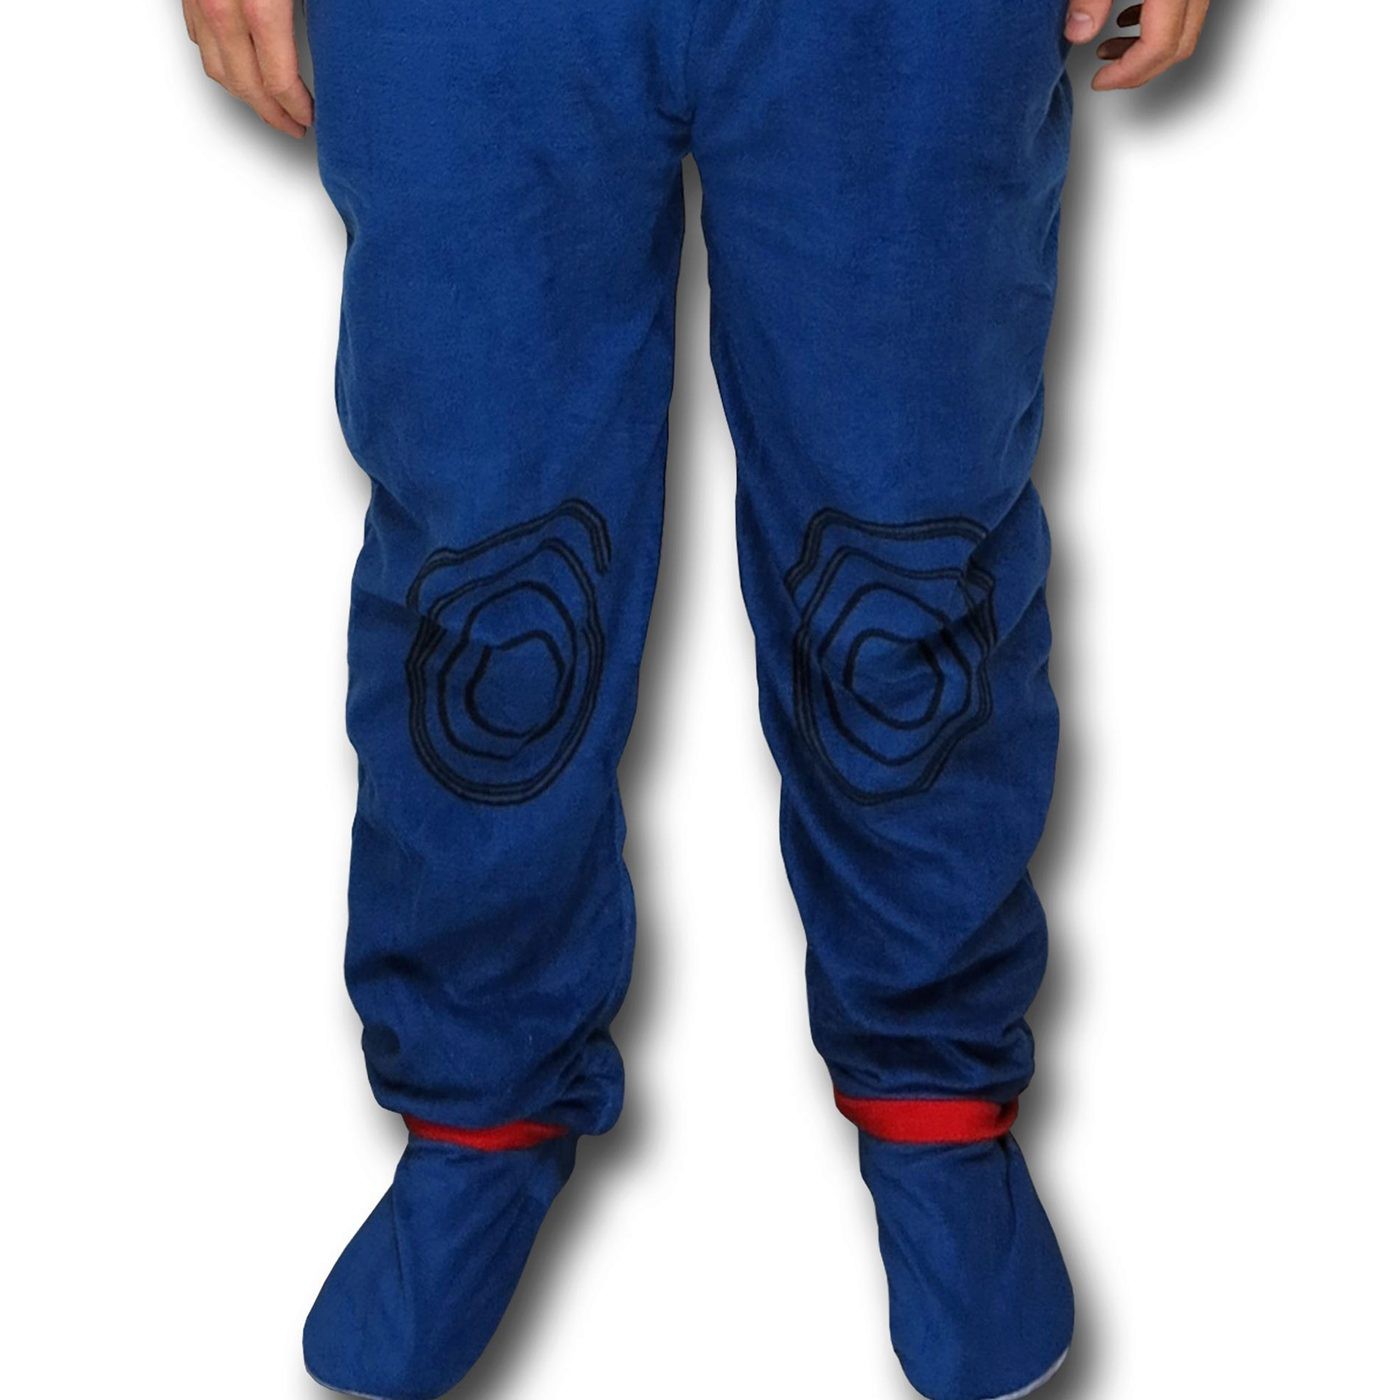 Captain America Fleece Costume Union Suit Pajamas